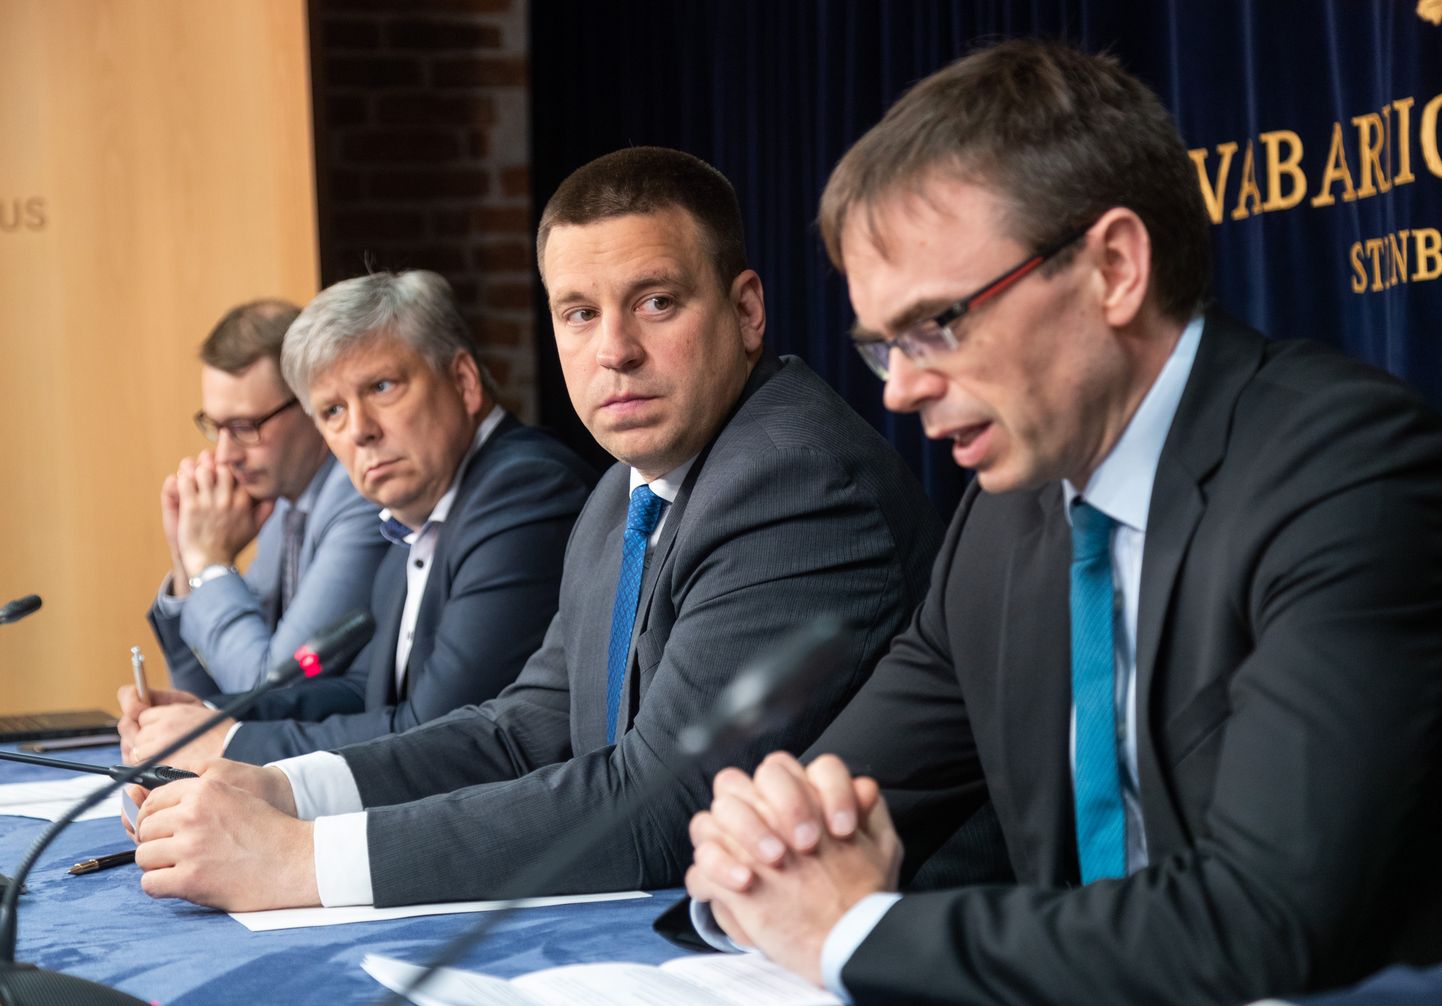 Valitsuse pressikonverents.
Pildil vasakult, Siim Kiisler, Jüri Ratas, Sven Mikser.